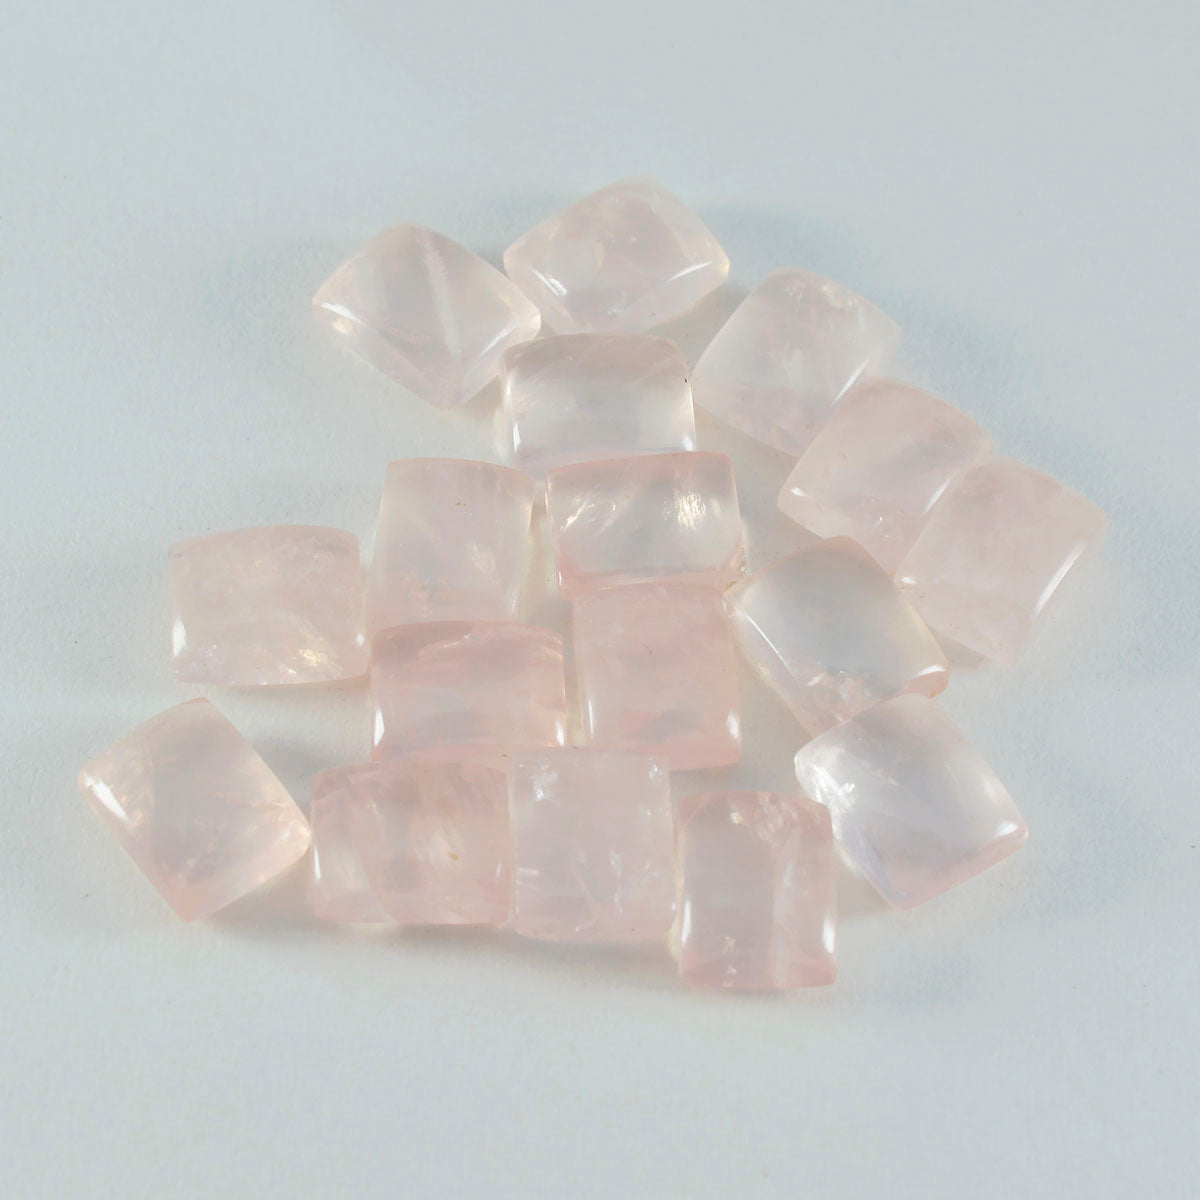 riyogems 1 шт. кабошон из розового кварца 9x11 мм восьмиугольной формы, драгоценные камни отличного качества